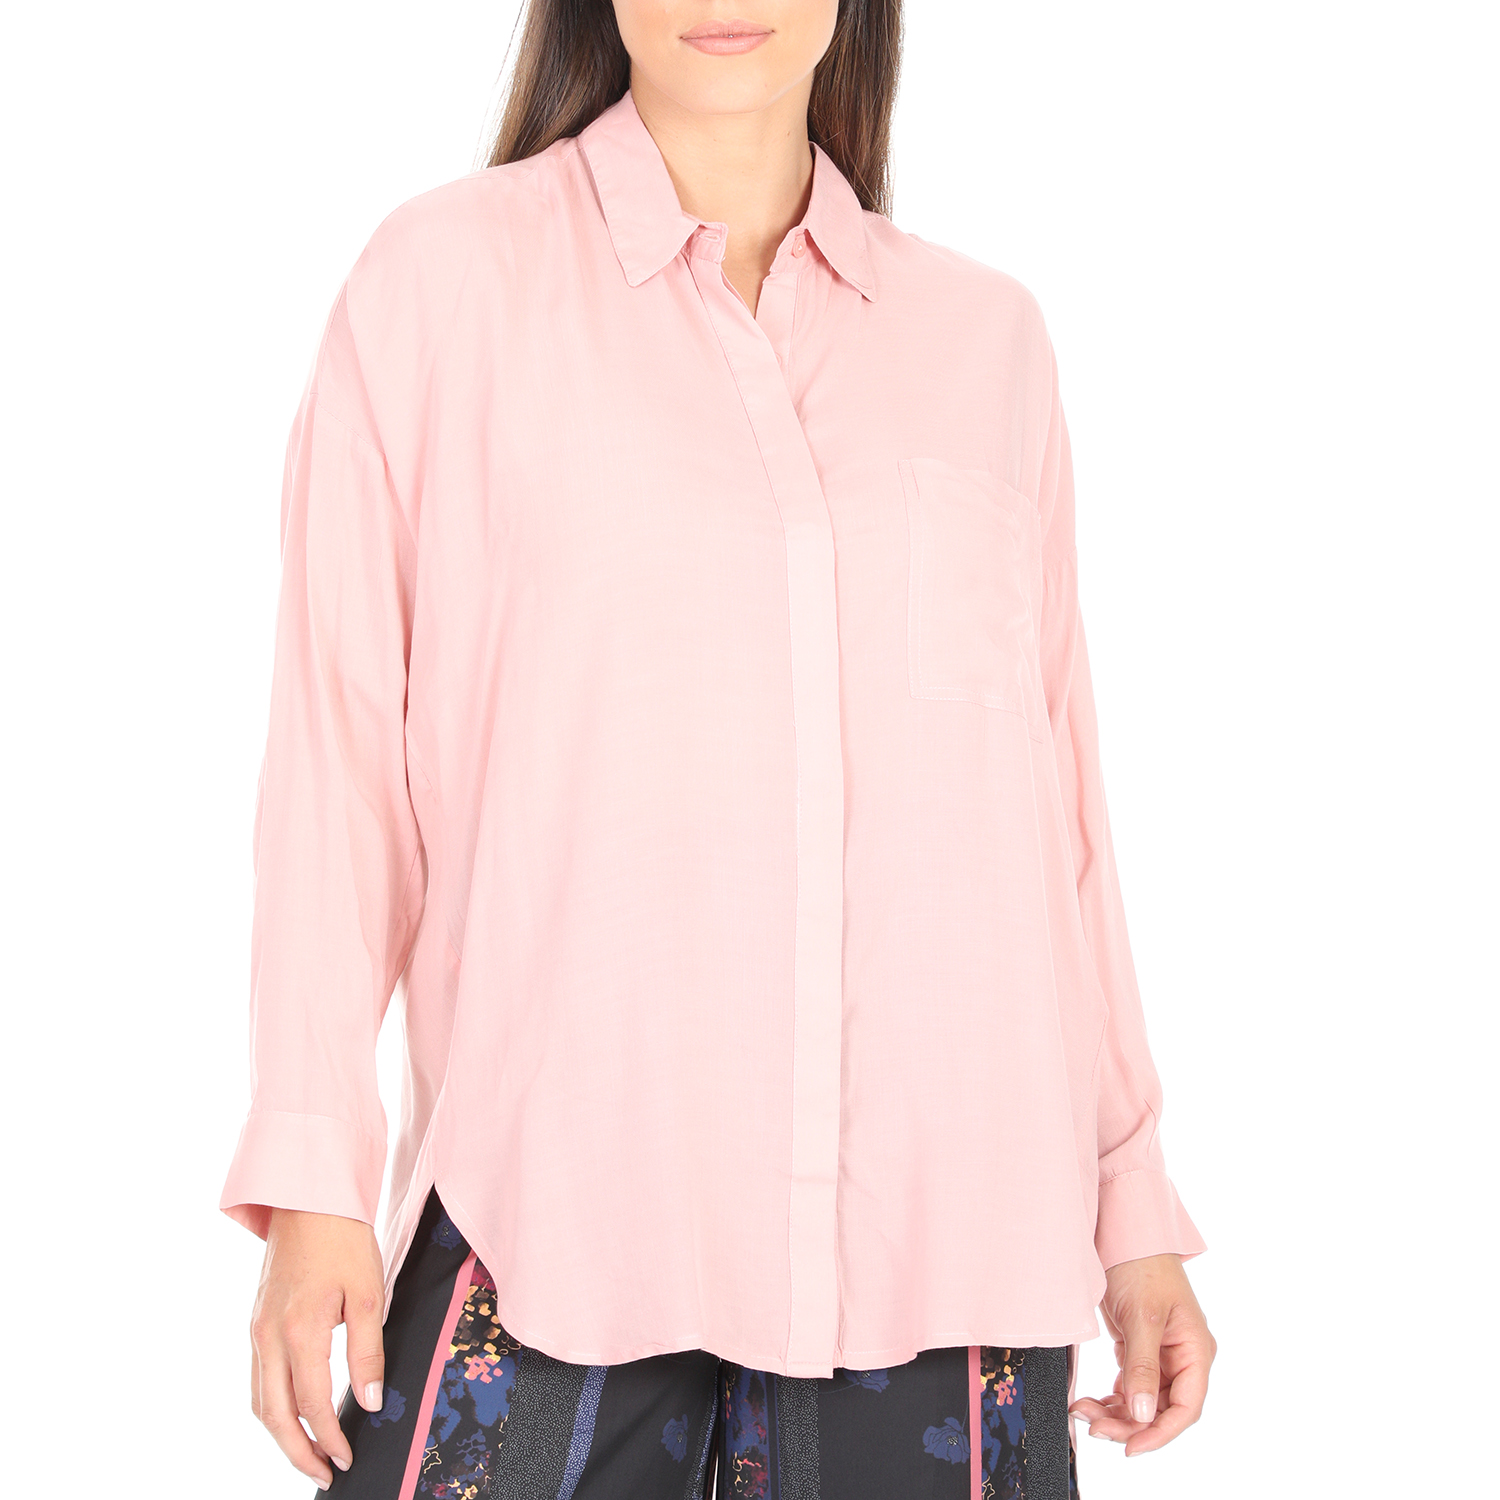 Γυναικεία/Ρούχα/Πουκάμισα/Μακρυμάνικα 'ALE - Γυναικεία πουκαμίσα 'ALE ροζ